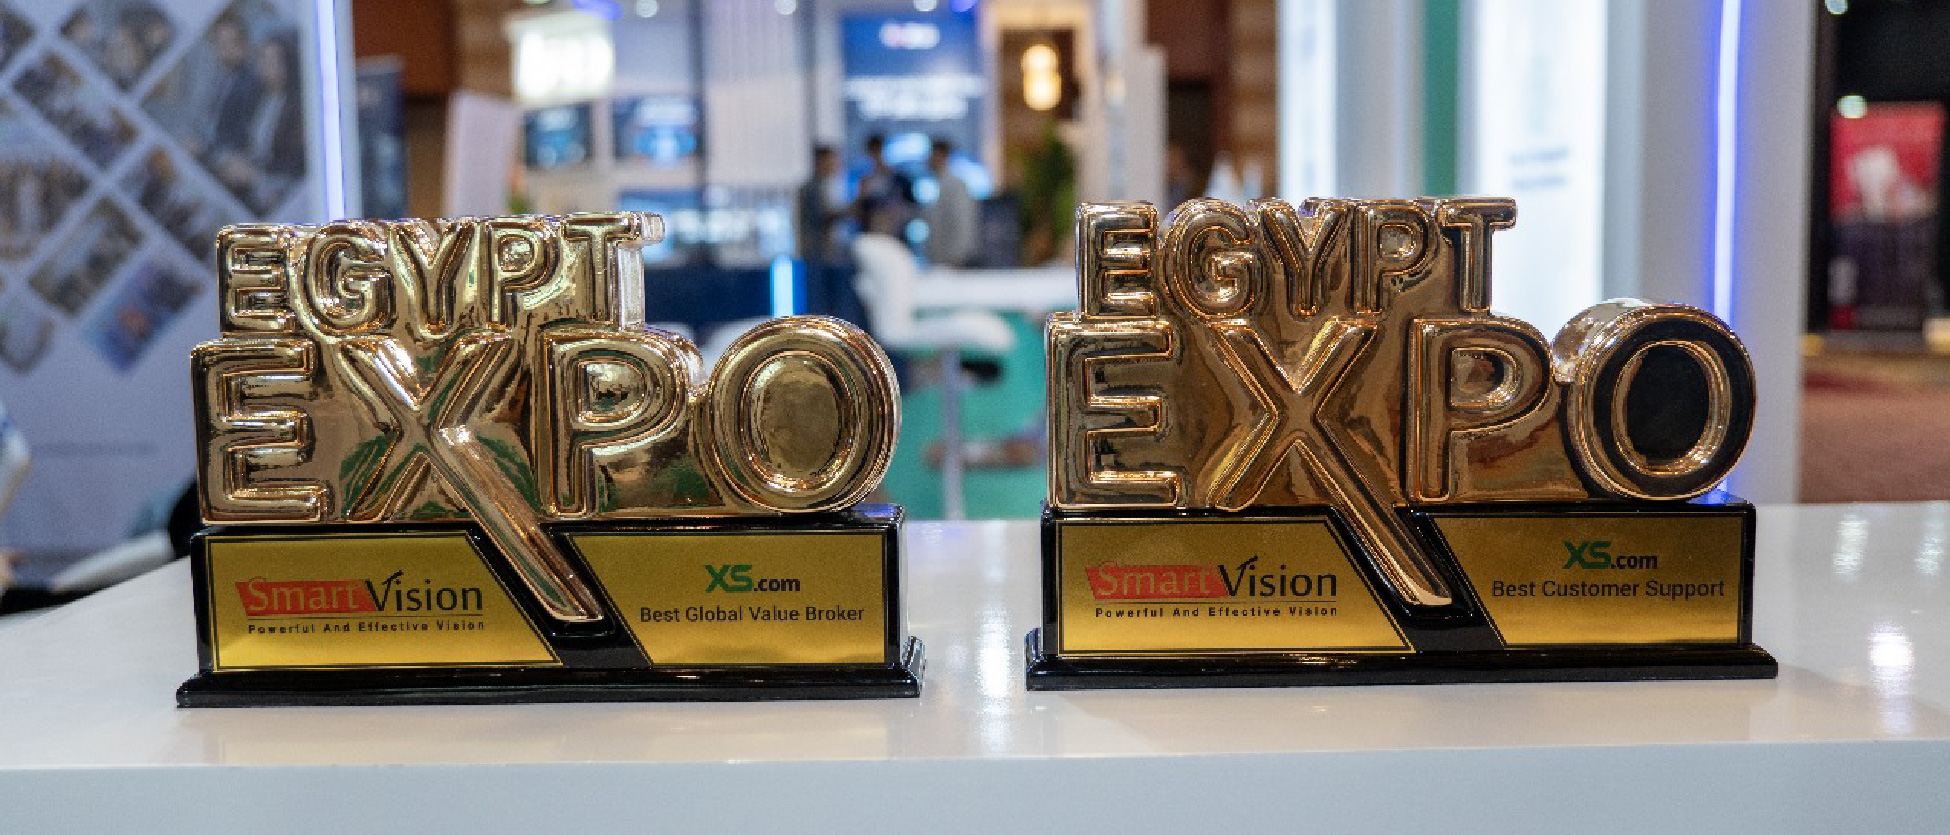 إكس أس تحصد جائزة "أفضل وسيط ذو قيمة عالمية" في معرض مصر للاستثمار